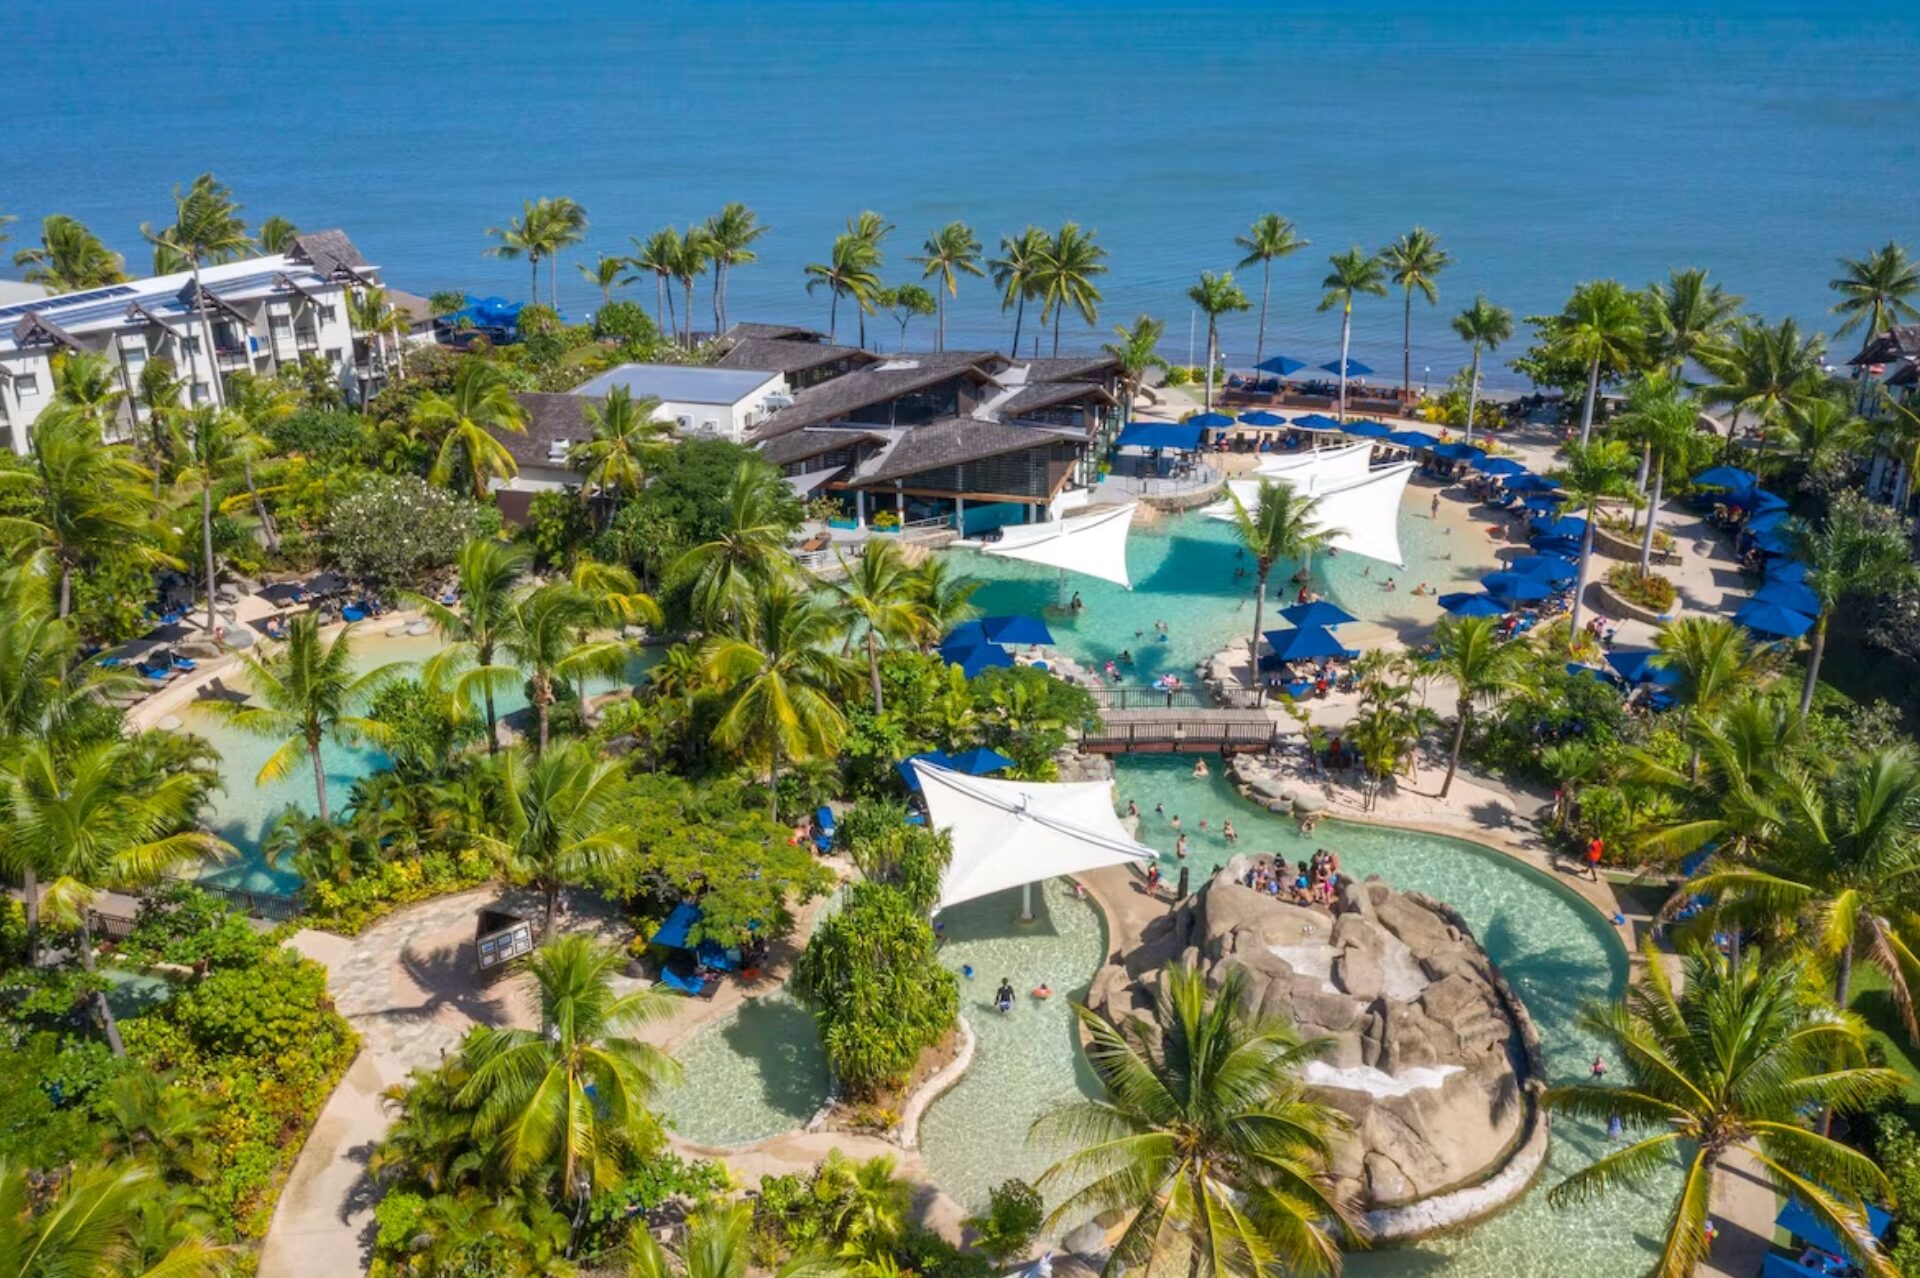 Radisson Blu Resort Denarau Island in Fiji is a Safe Choice